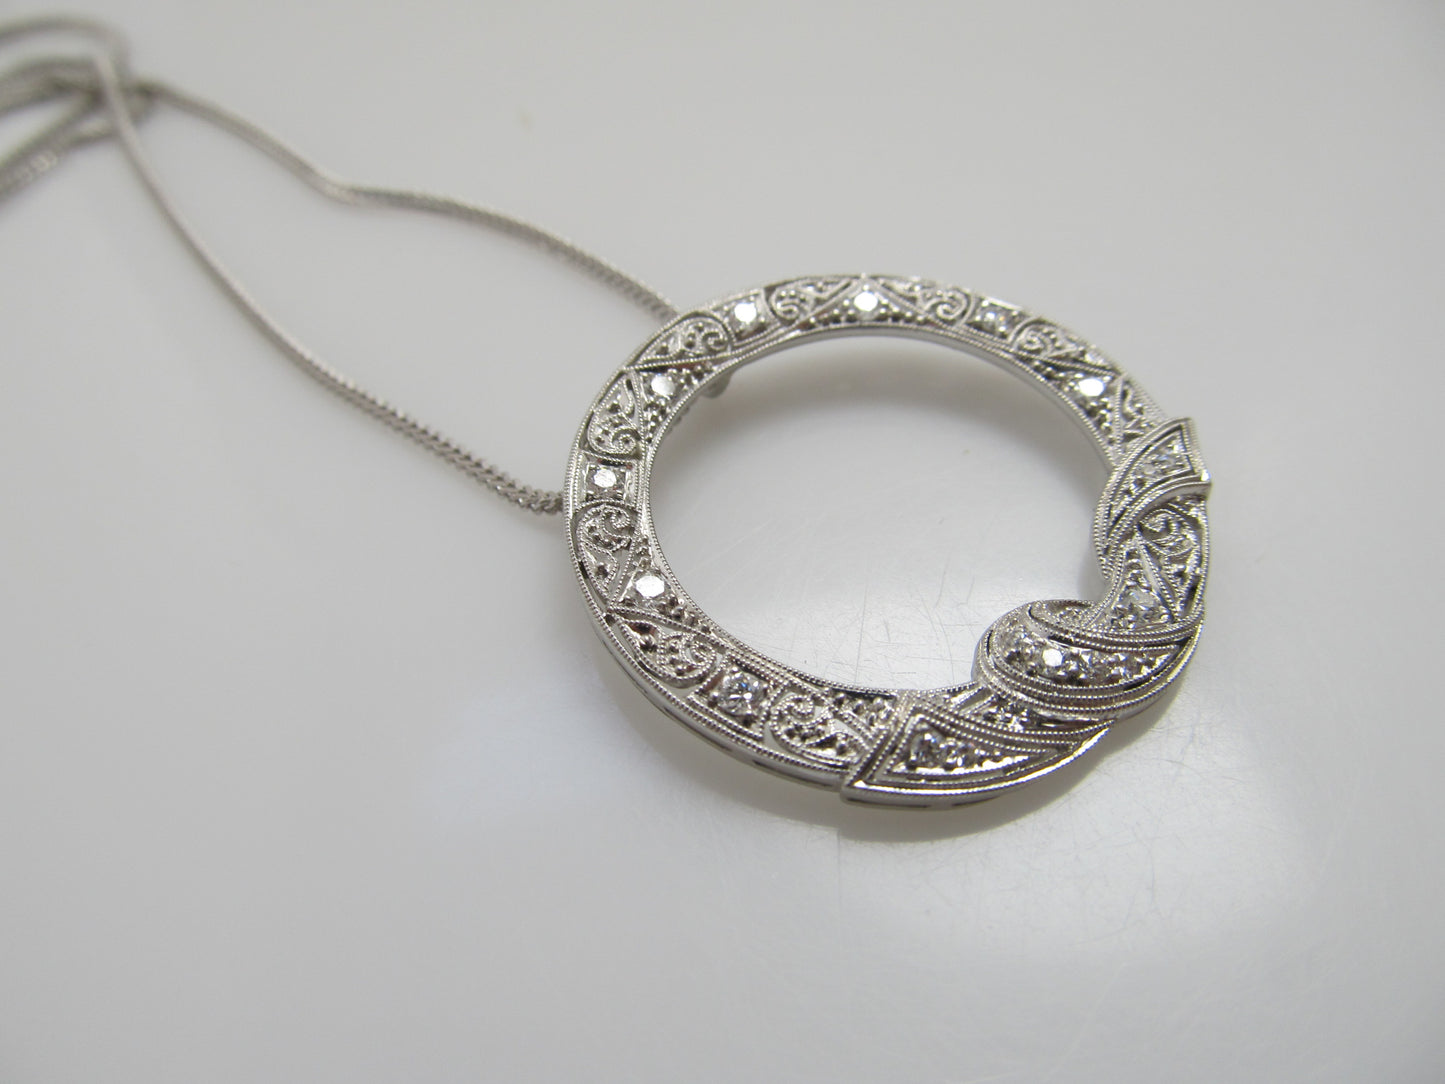 Antique platinum diamond circle necklace